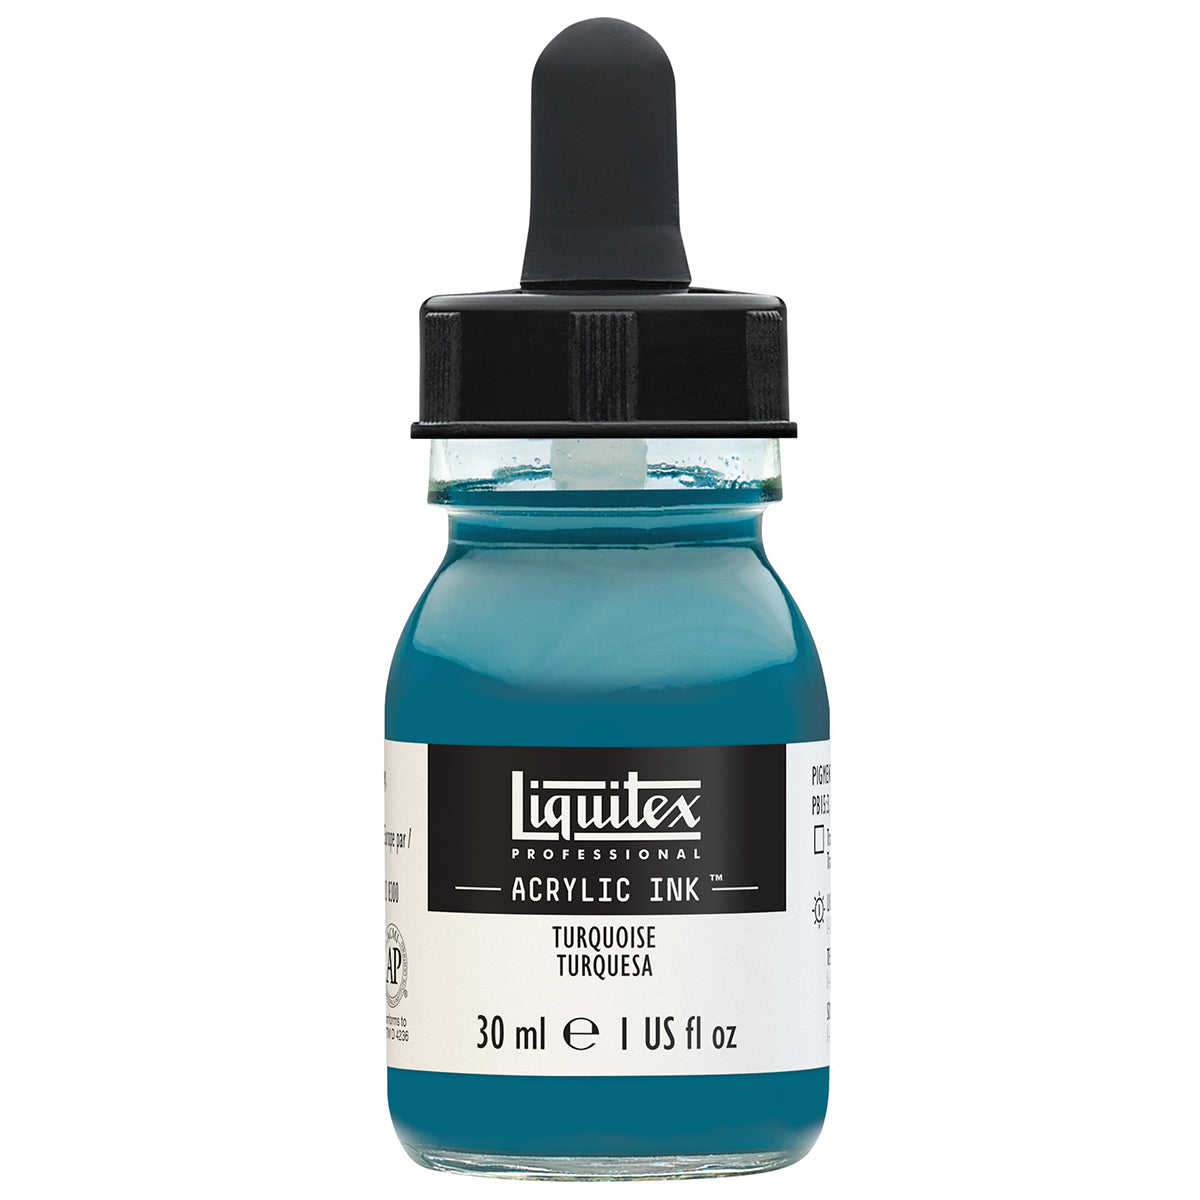 Liquitex - Acrylic Ink - 30ml Turquoise